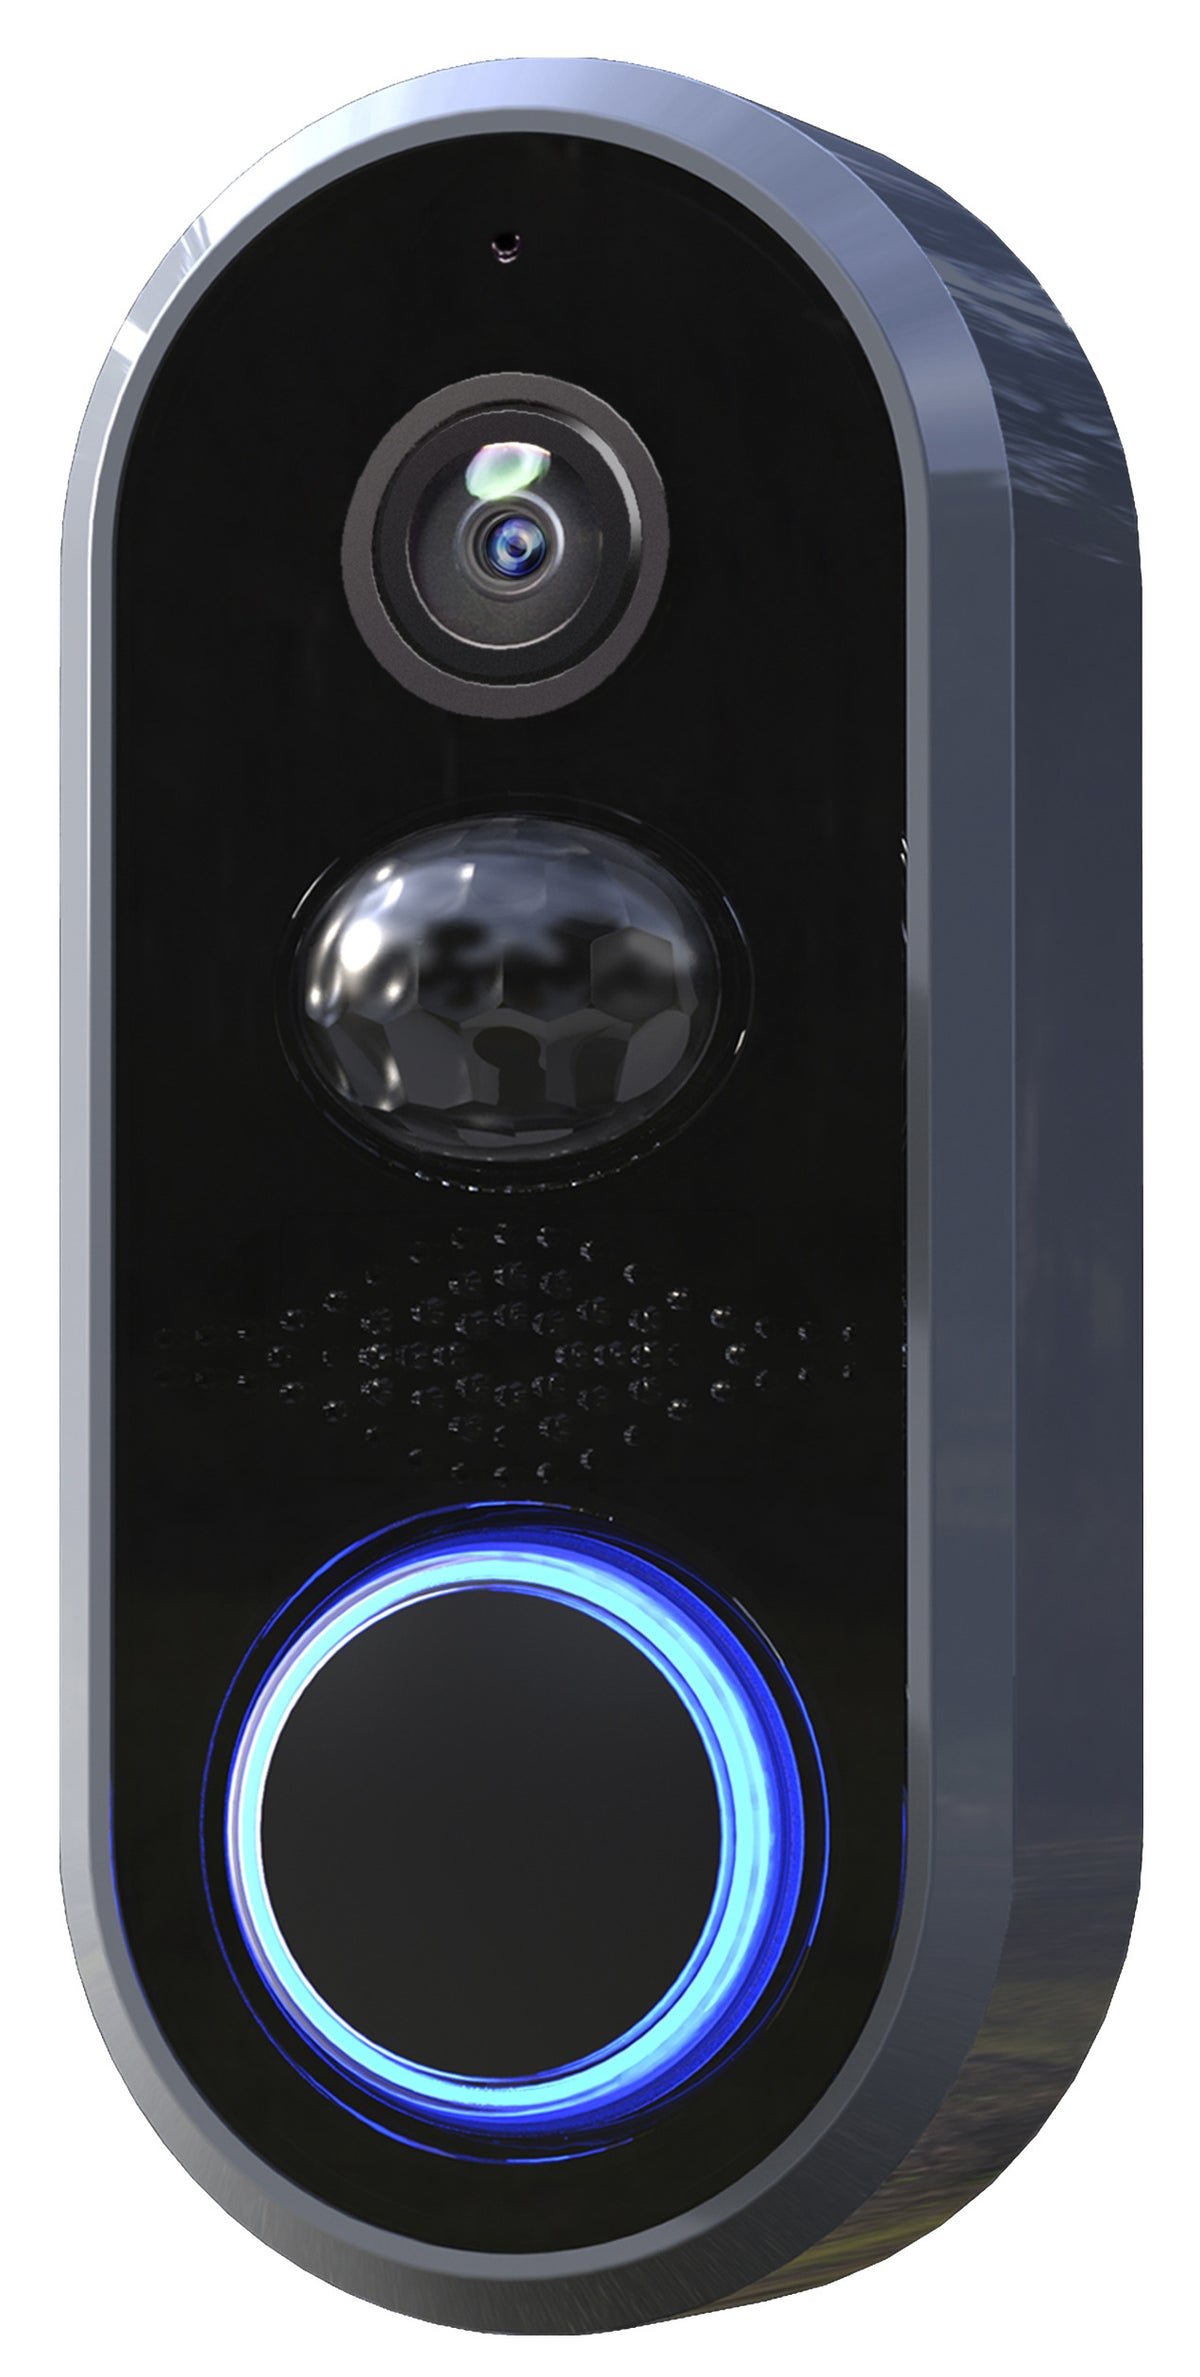 Heath Zenith SL-3012-00 Notifi Elite Wired Video Door Bell, Black